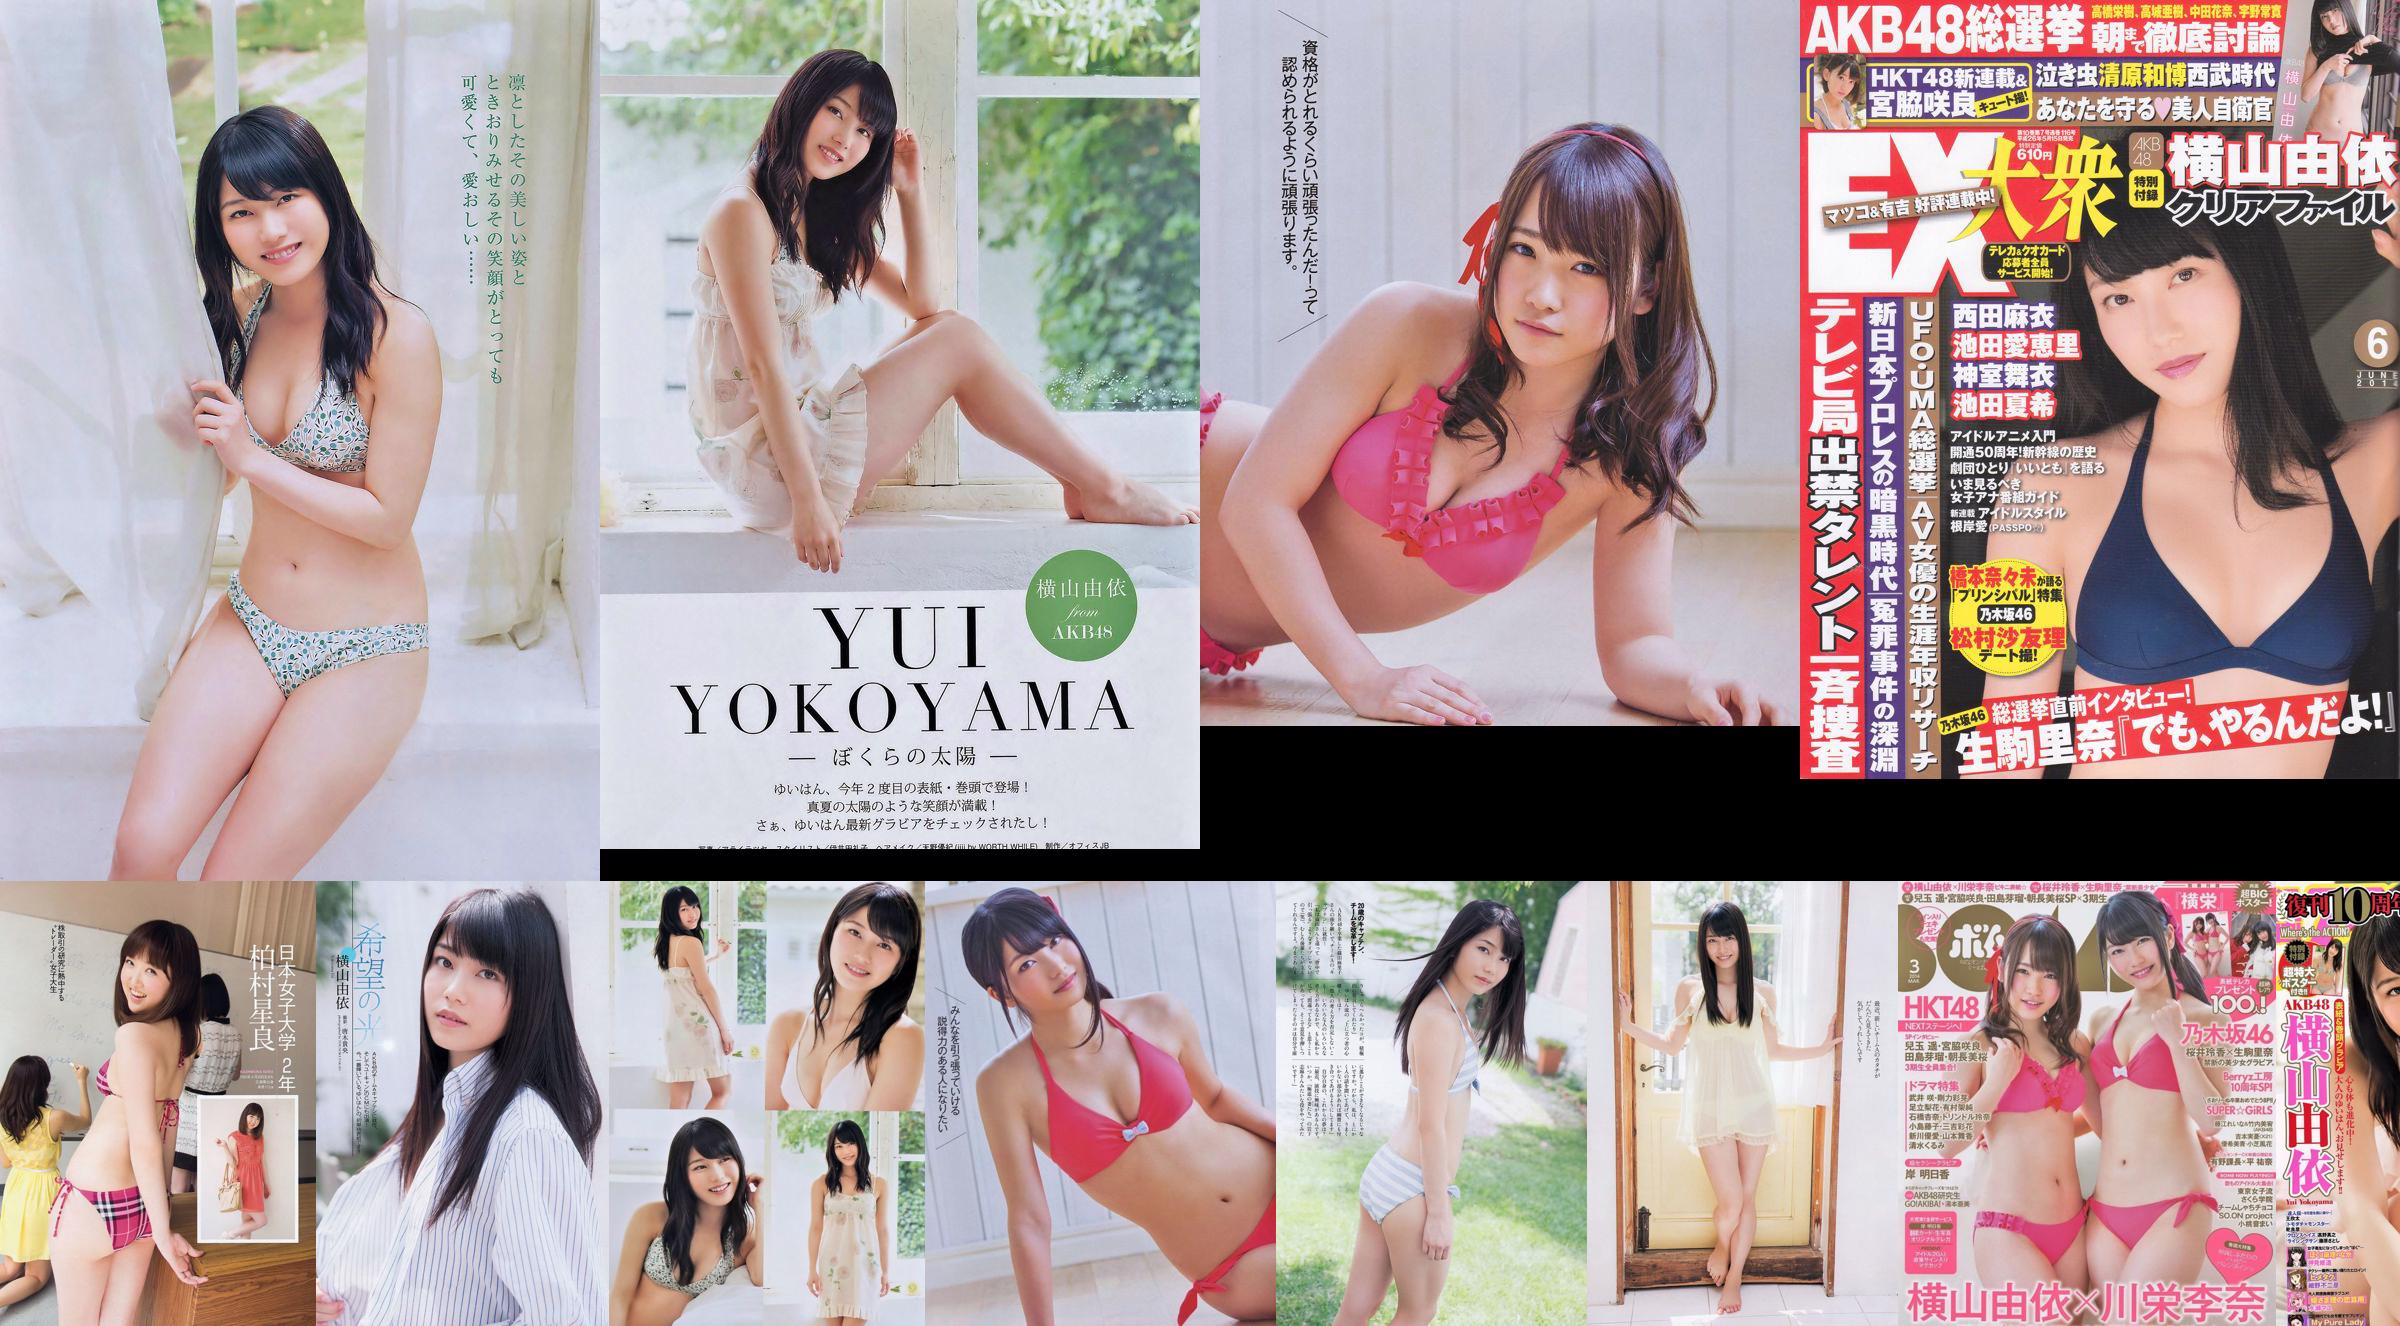 [Bomb Magazine] 2014 No.03 Yui Yokoyama Rina Kawaei Foto No.90620a Seite 1